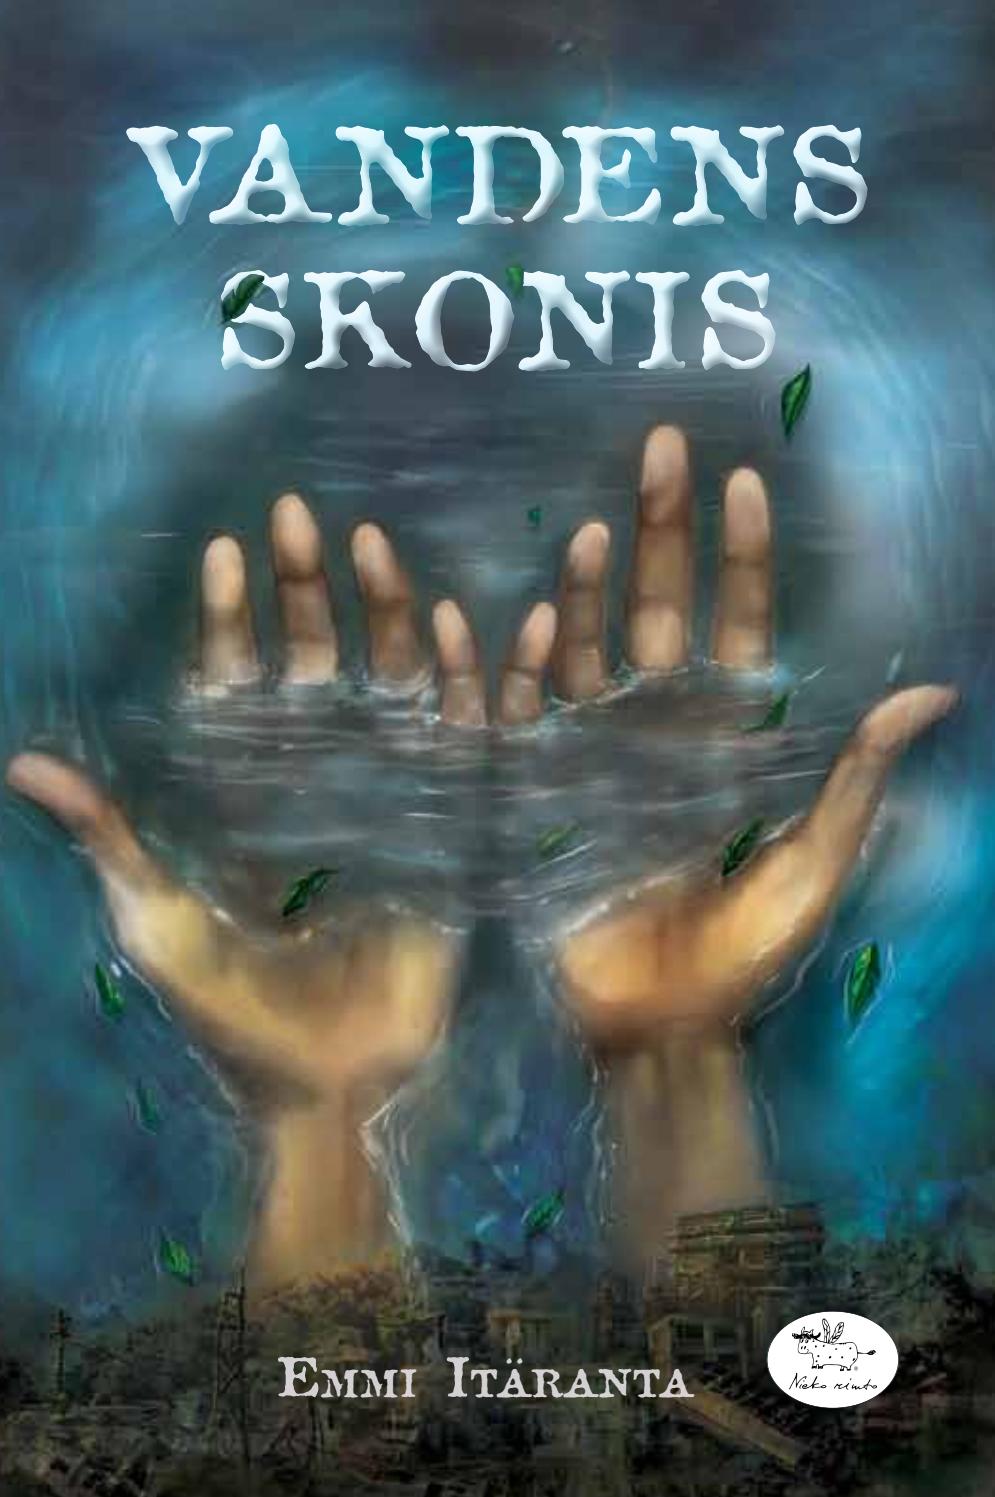 Vandes skonis book cover